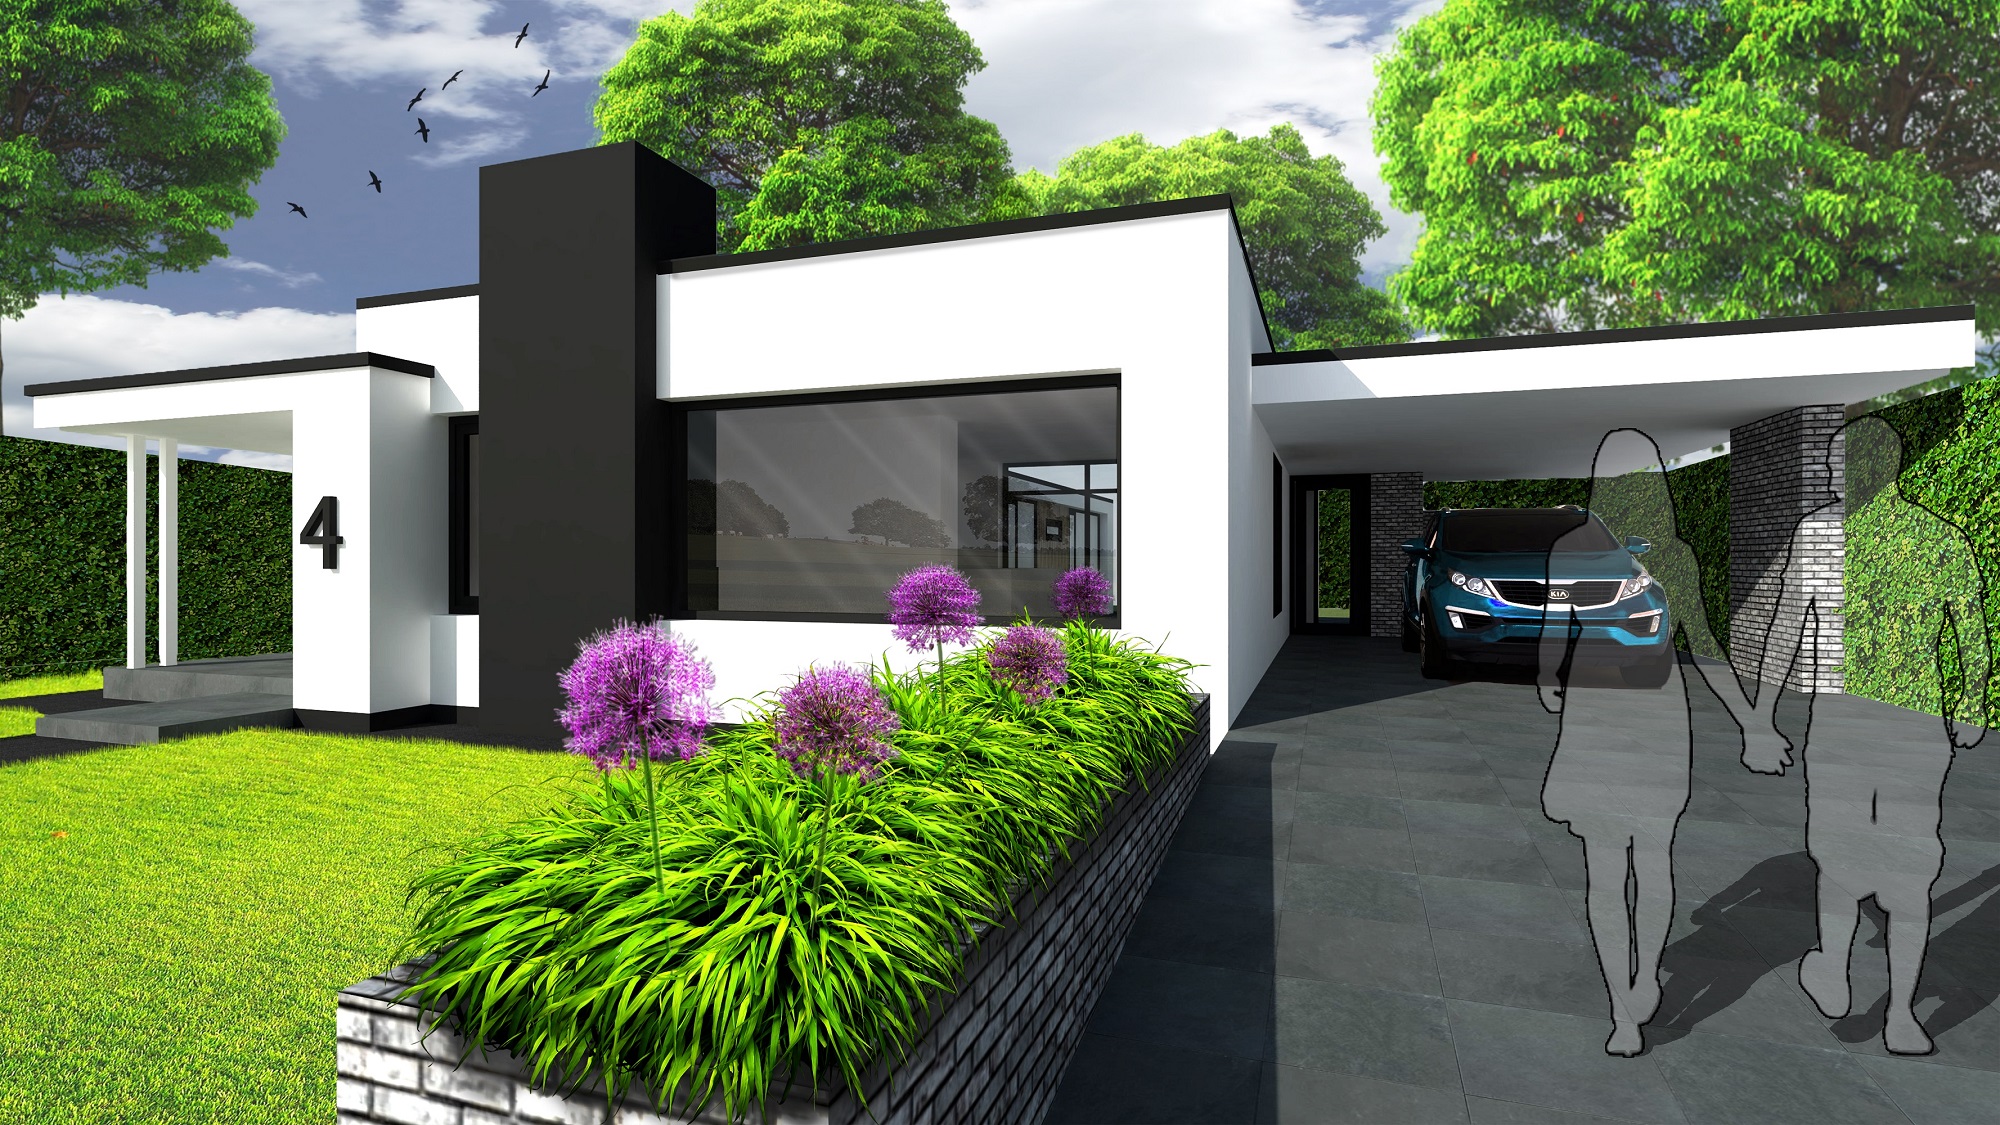 Atelier-007-moderne-woning-modern-house-wit-glas-licht-zicht_WWW-FRONT